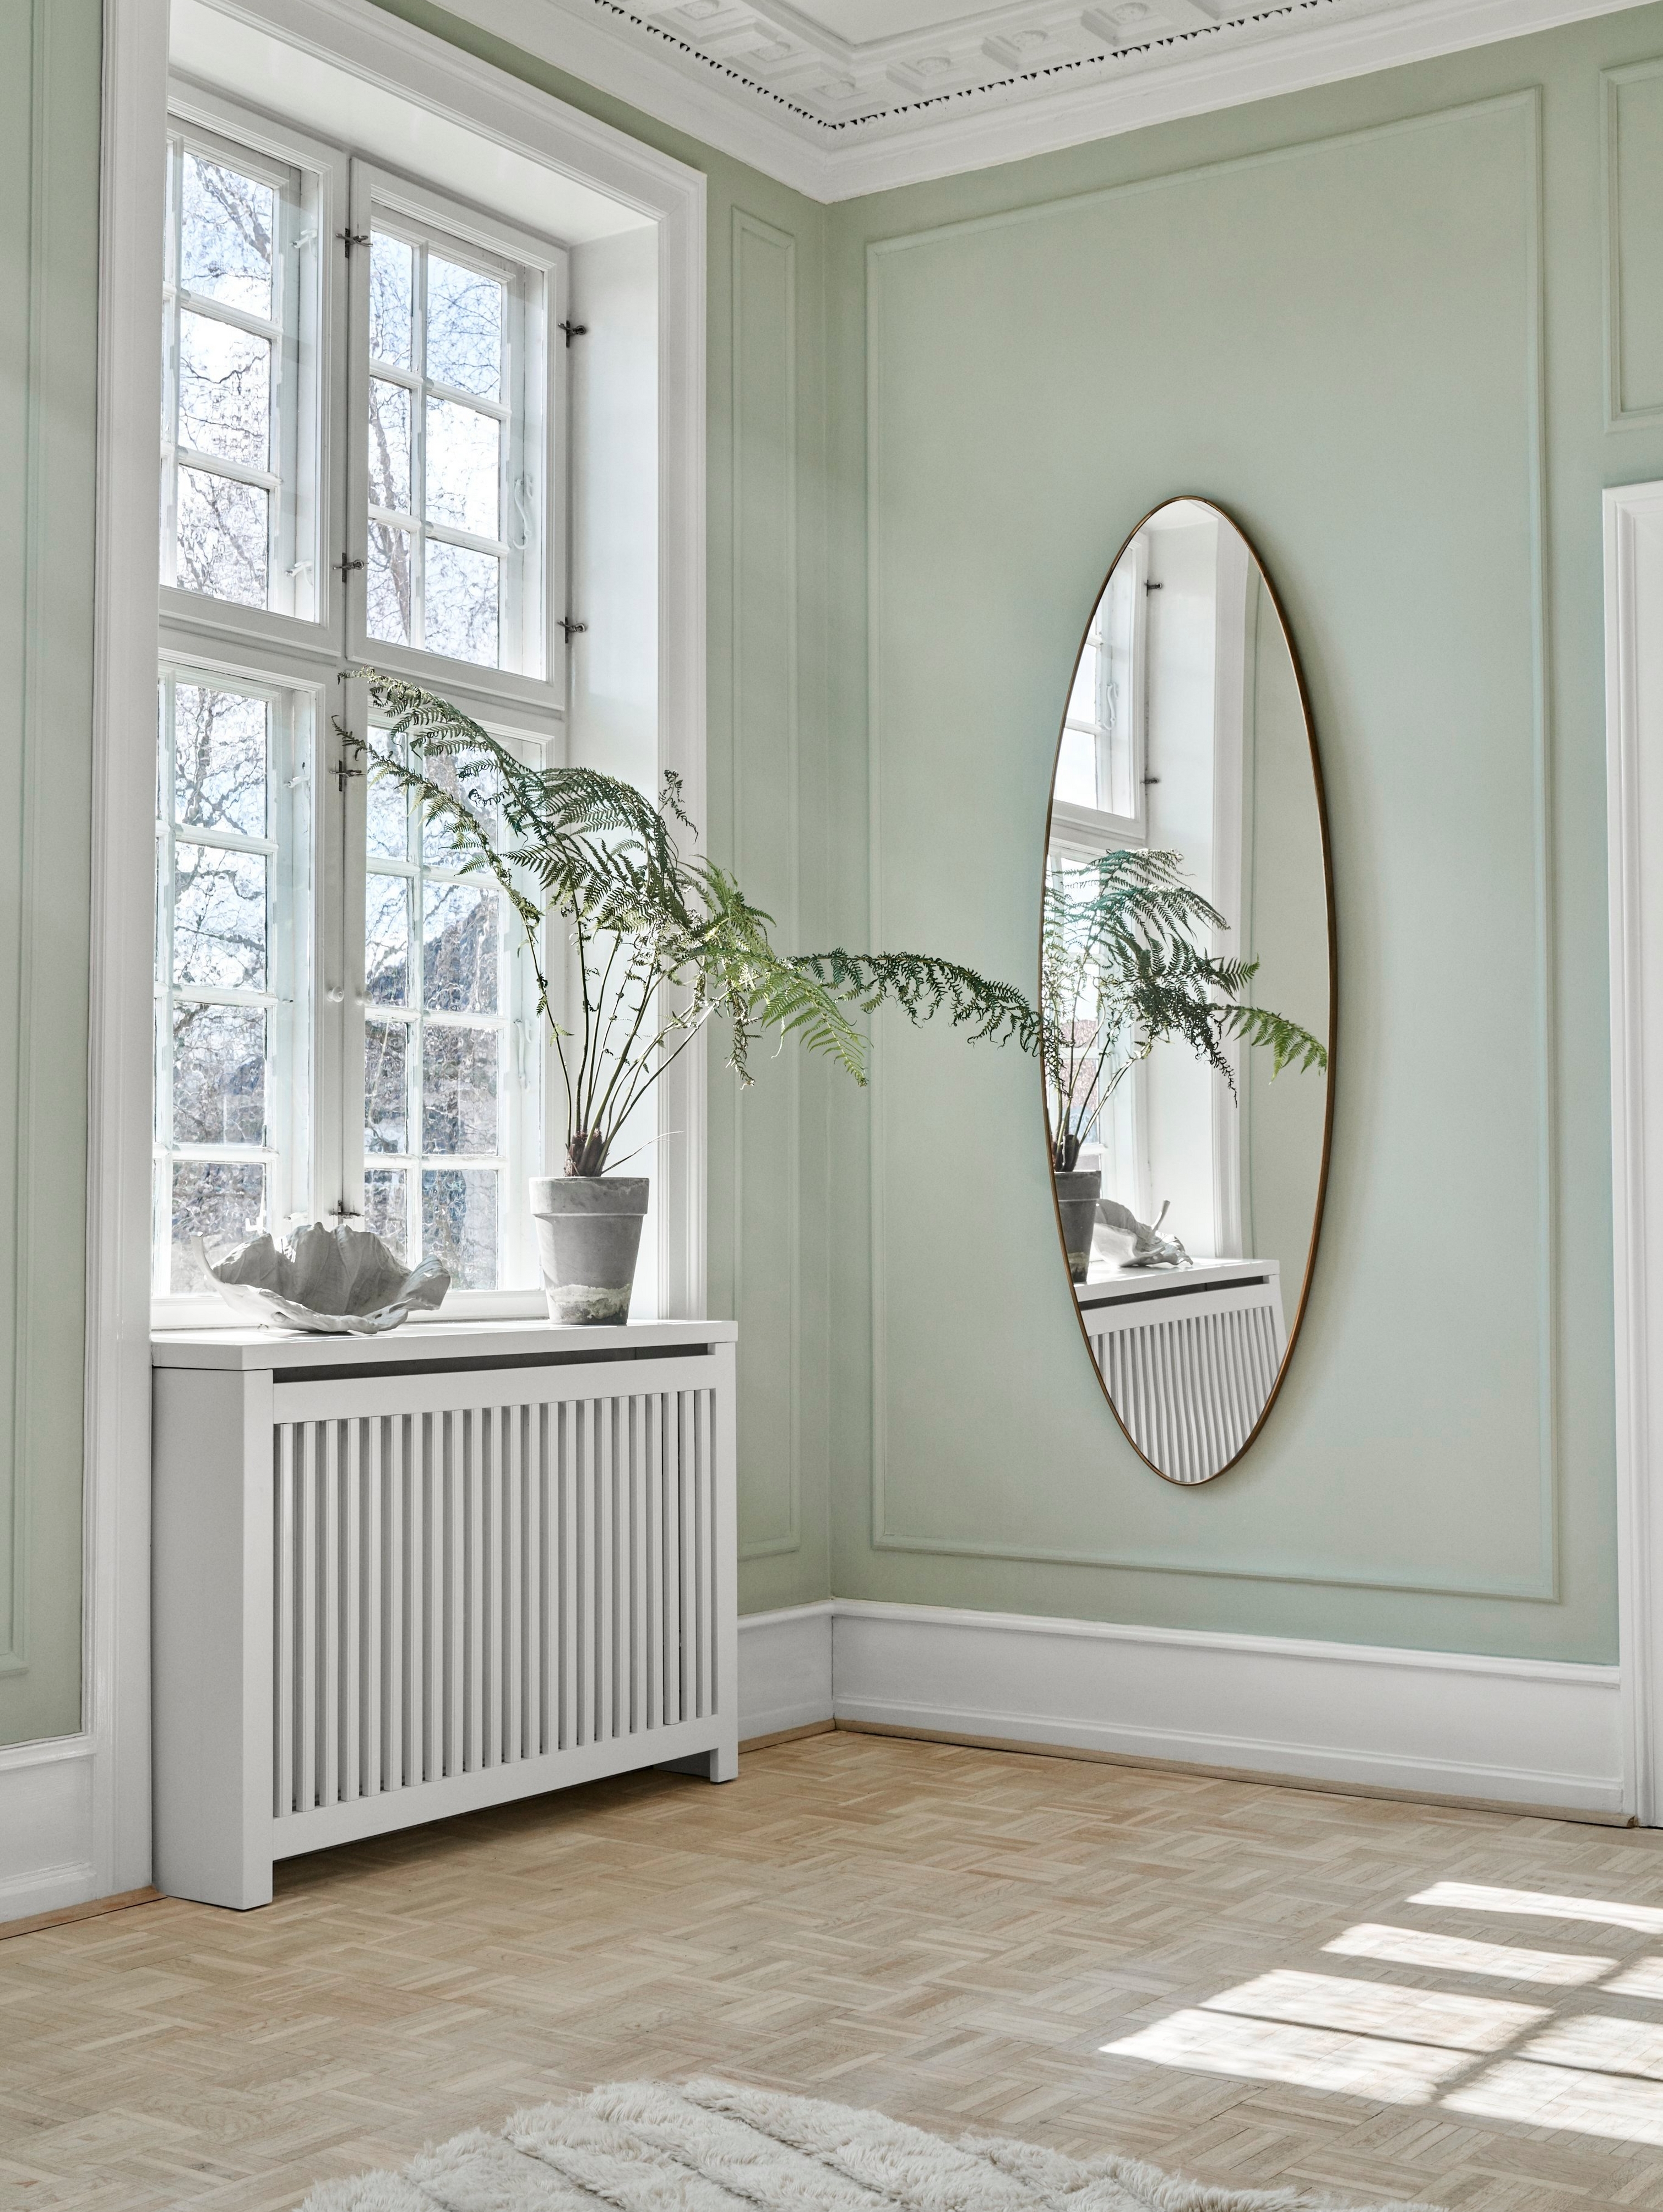 Lyst hjørne med spejl, plante og Magnolia skulptur.